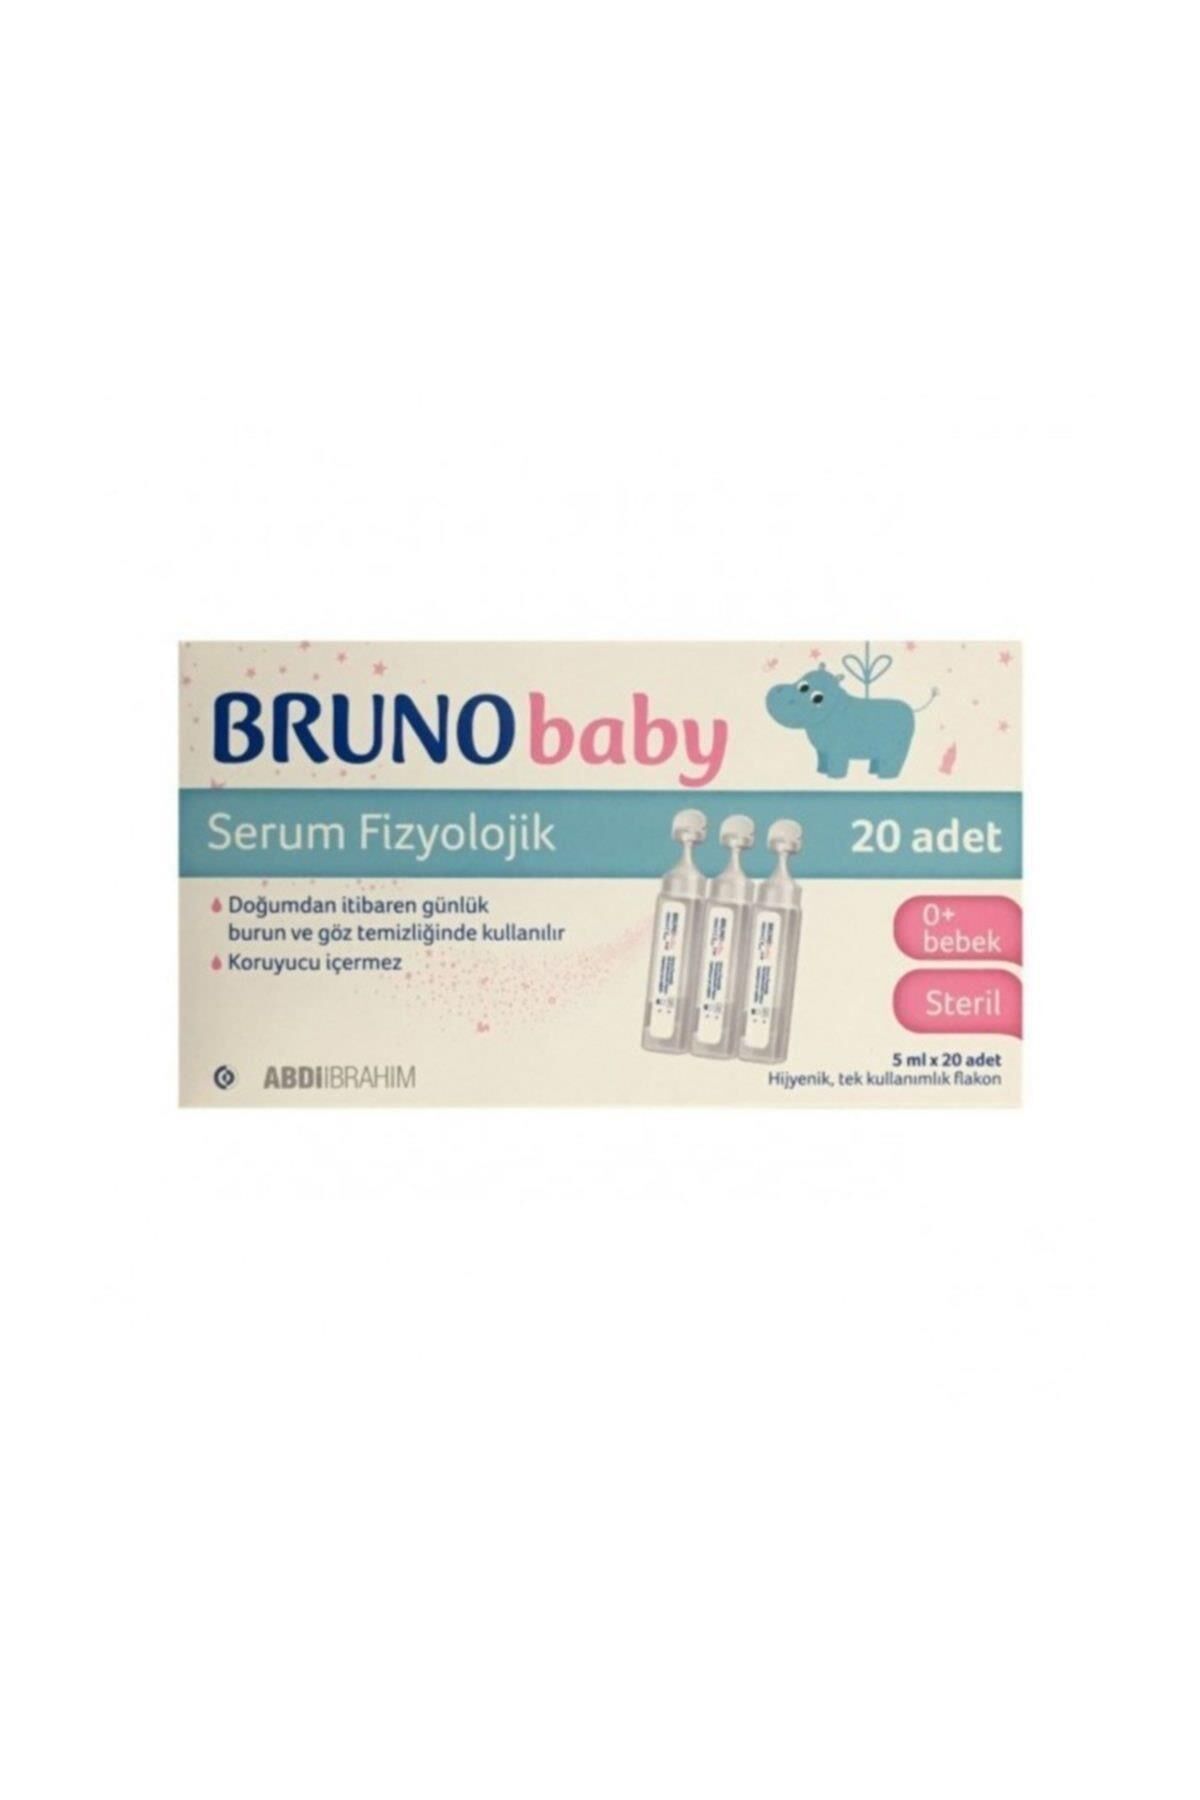 Bruno Baby Serum Fizyolojik 5 Ml*20 Adet-Burun ve Göz Temizleyici Serum